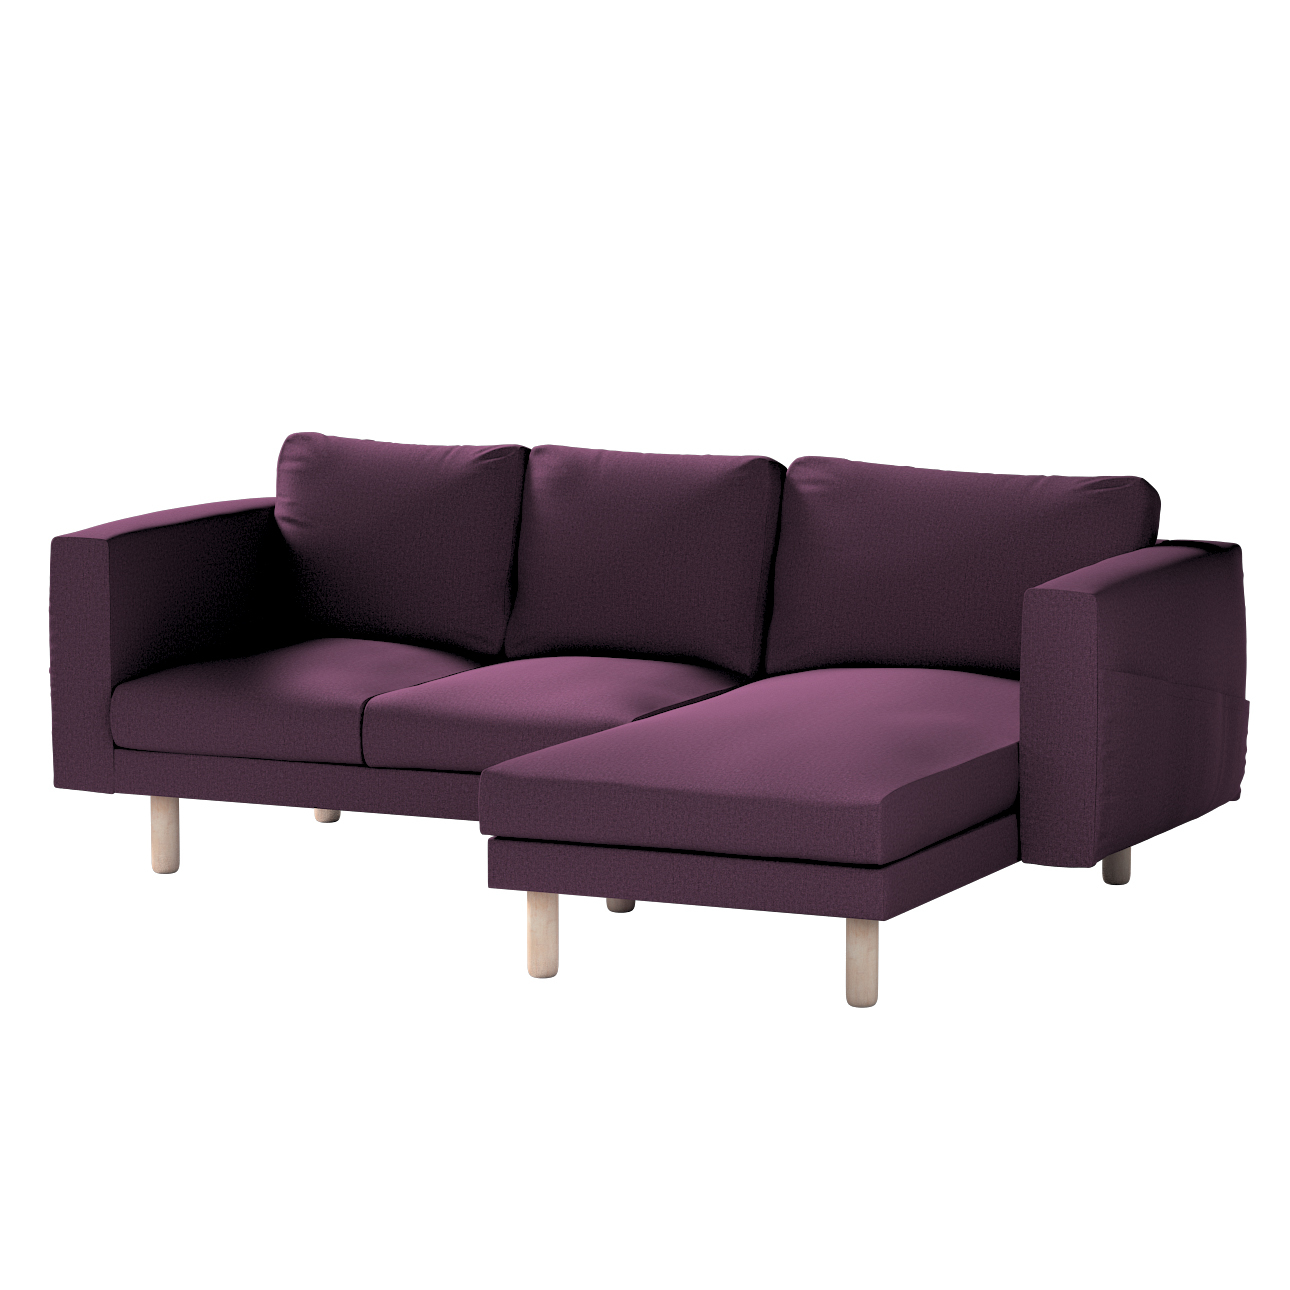 Bezug für Norsborg 3-Sitzer Sofa mit Recamiere, pflaume, Norsborg Bezug für günstig online kaufen